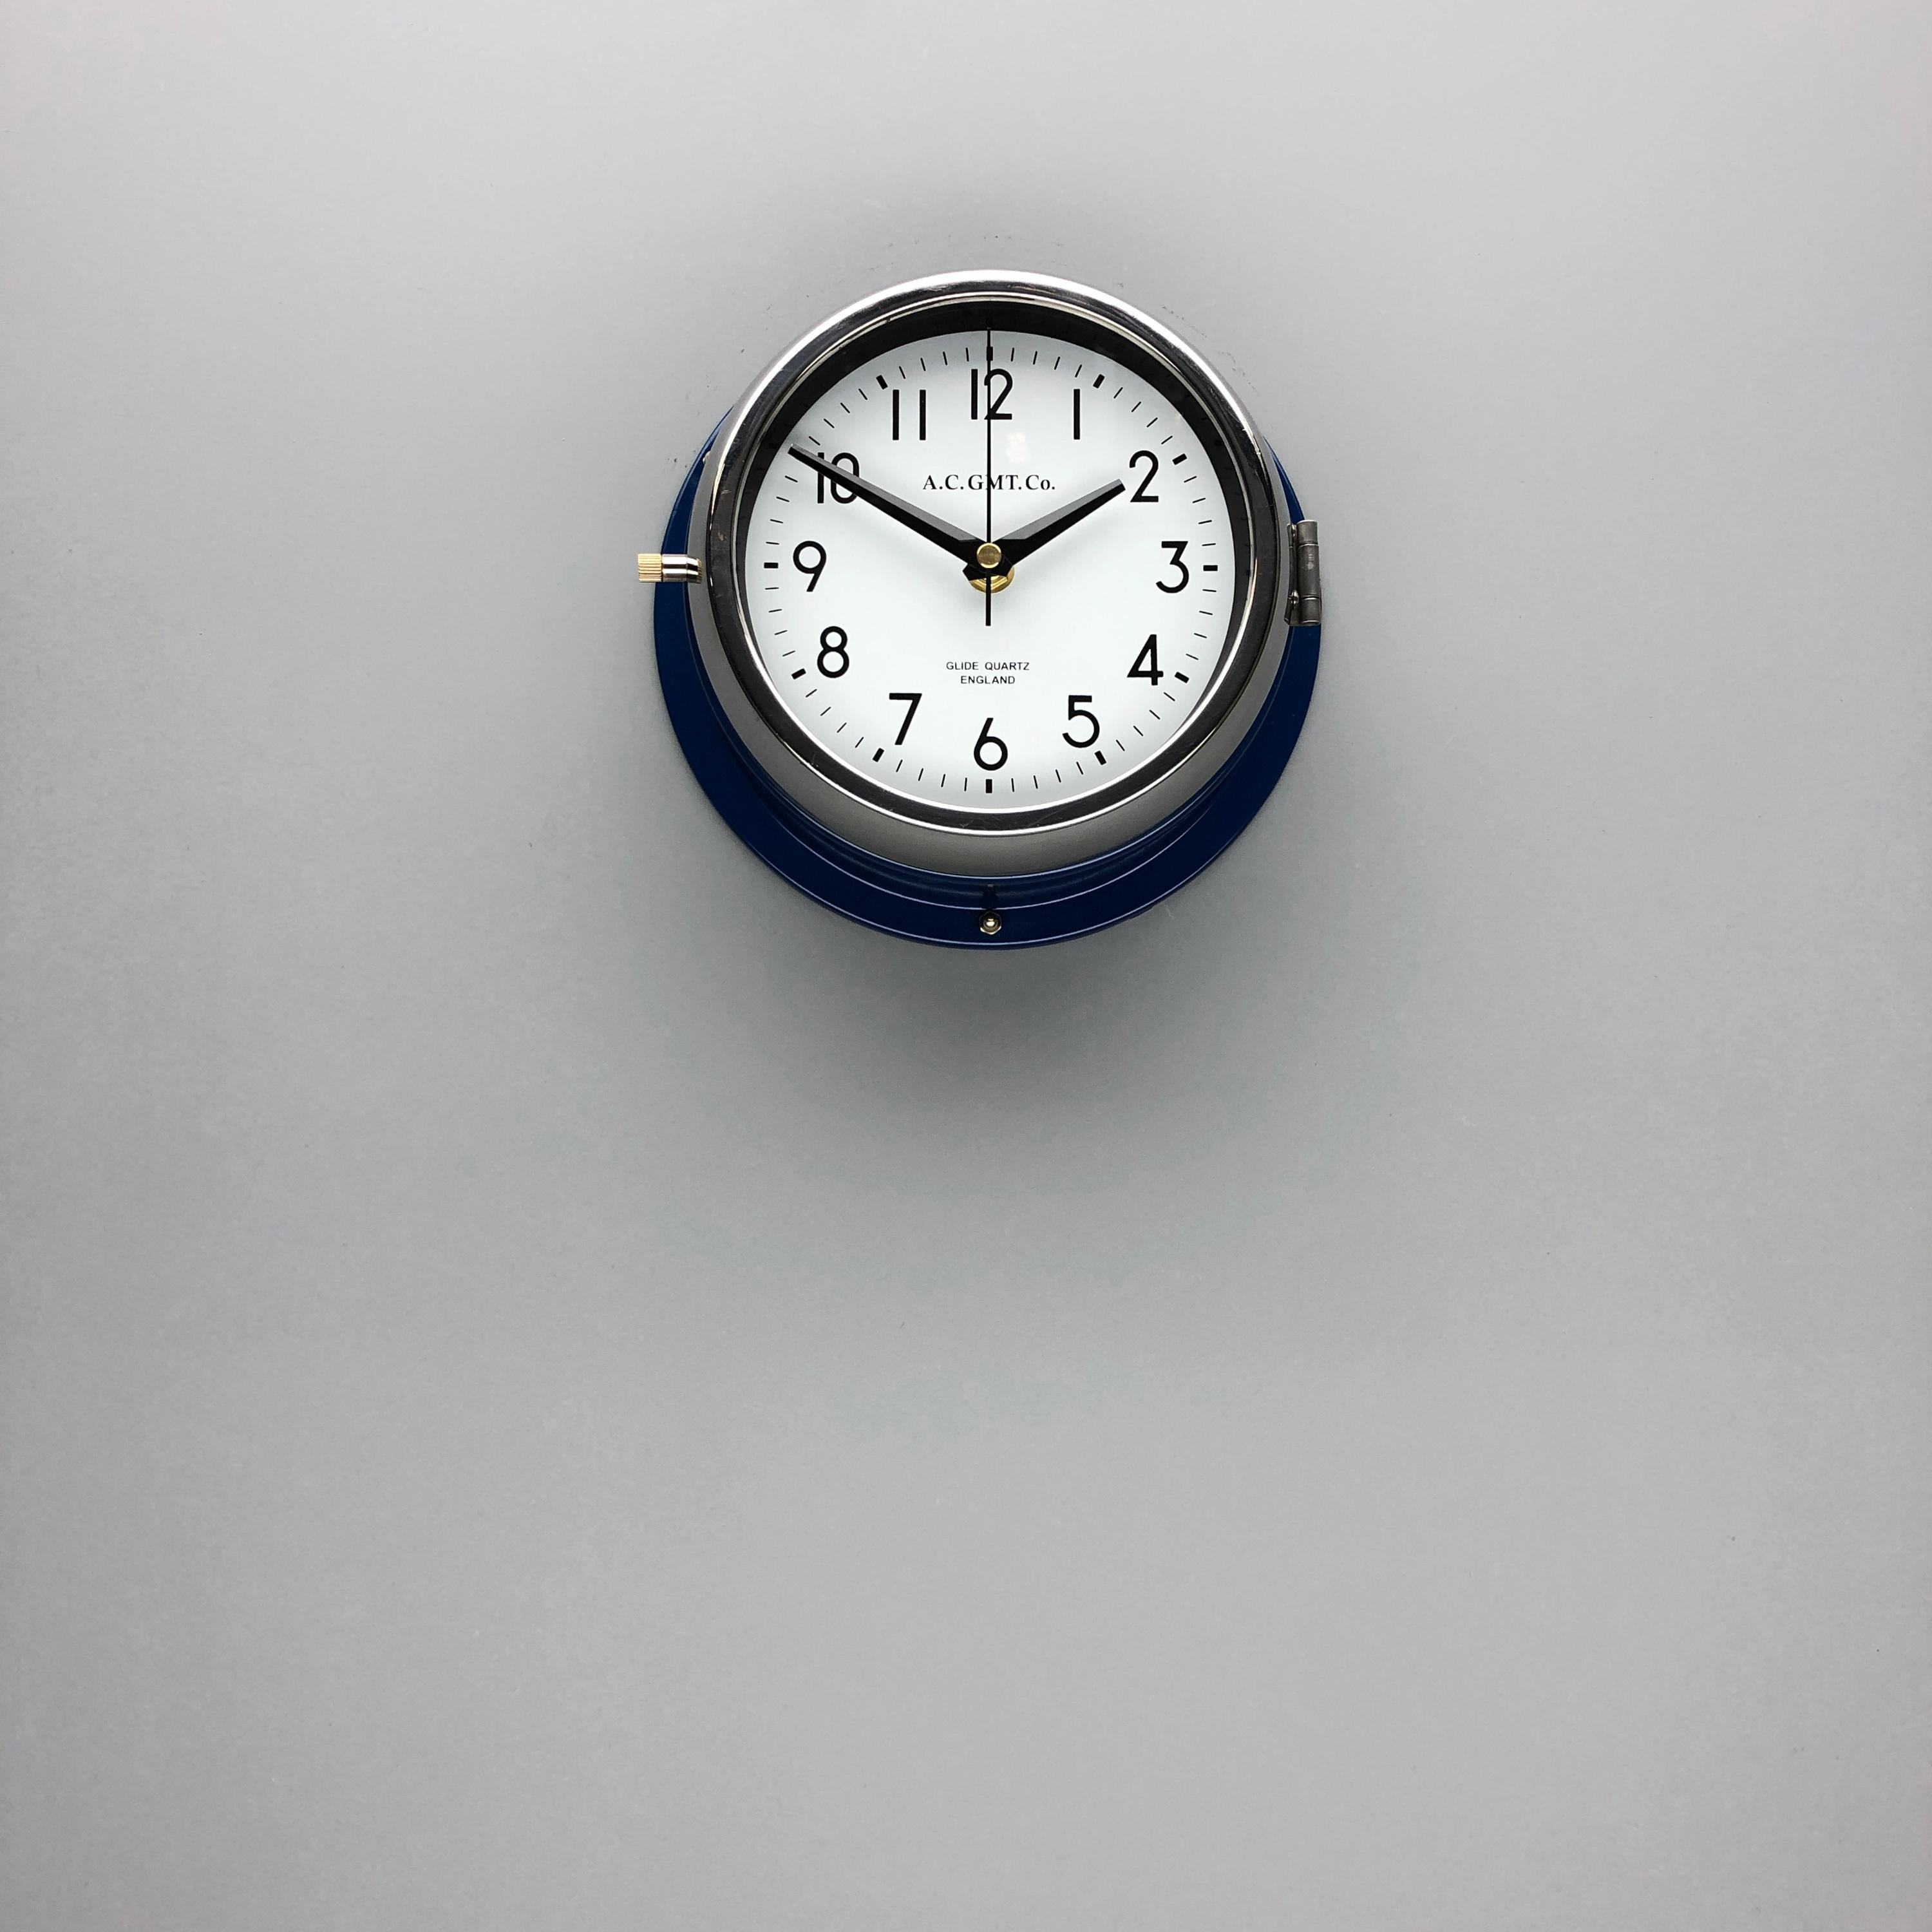 Von industriellen Schrottplätzen gerettet und in unserer britischen Werkstatt wieder zum Leben erweckt, ermöglicht uns unser fachmännischer Prozess, eine qualitativ hochwertige Uhr von luxuriösem Standard herzustellen. 
Bei A.C GMT Co. bringen wir